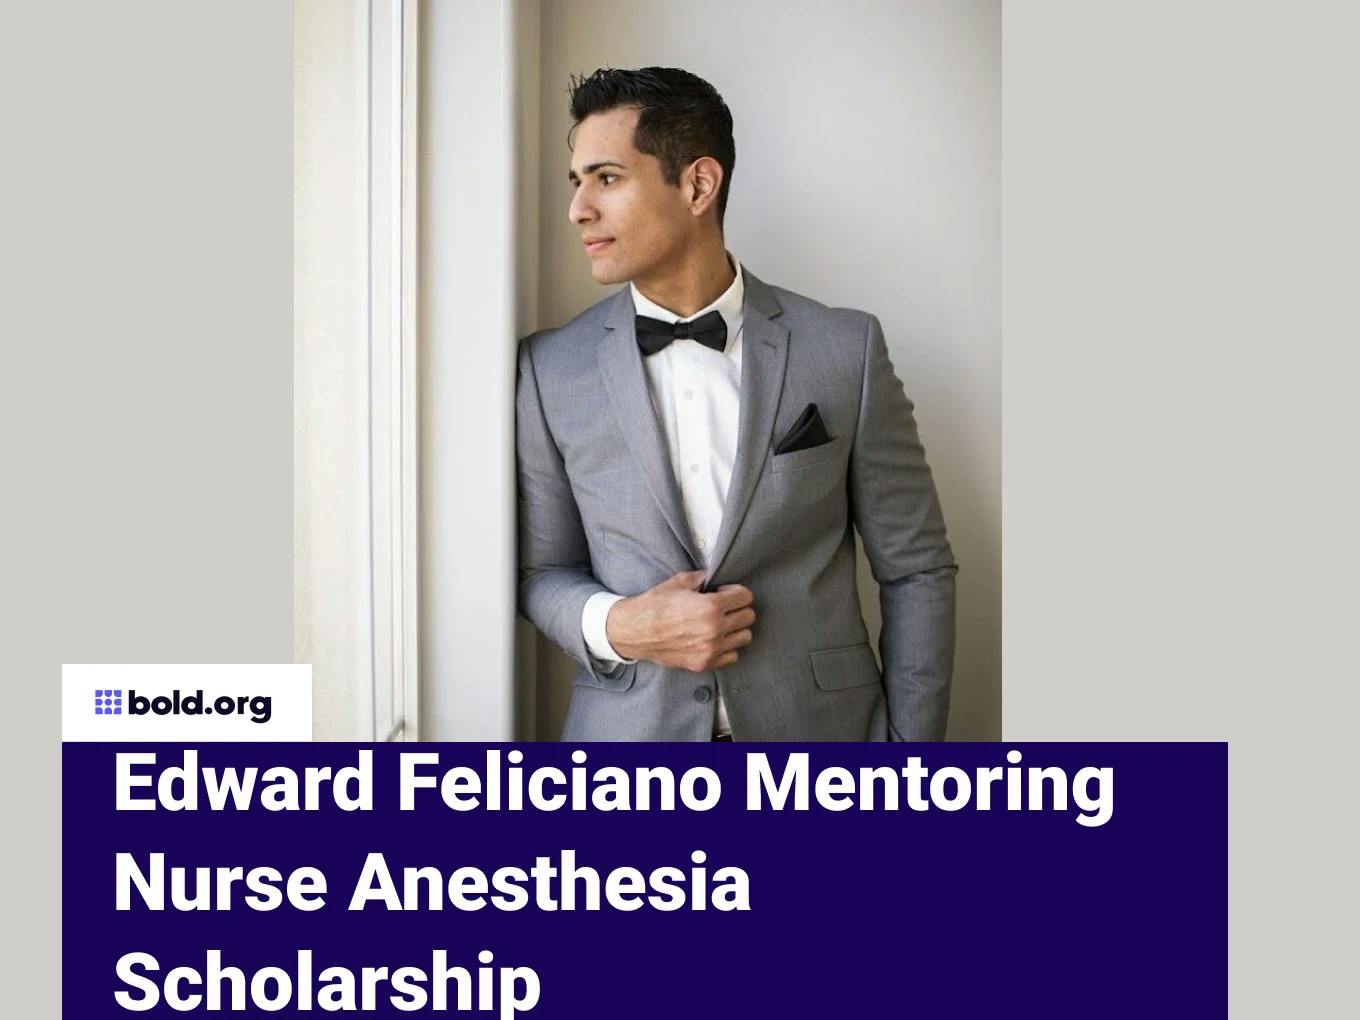 Edward Feliciano Mentoring Nurse Anesthesia Scholarship